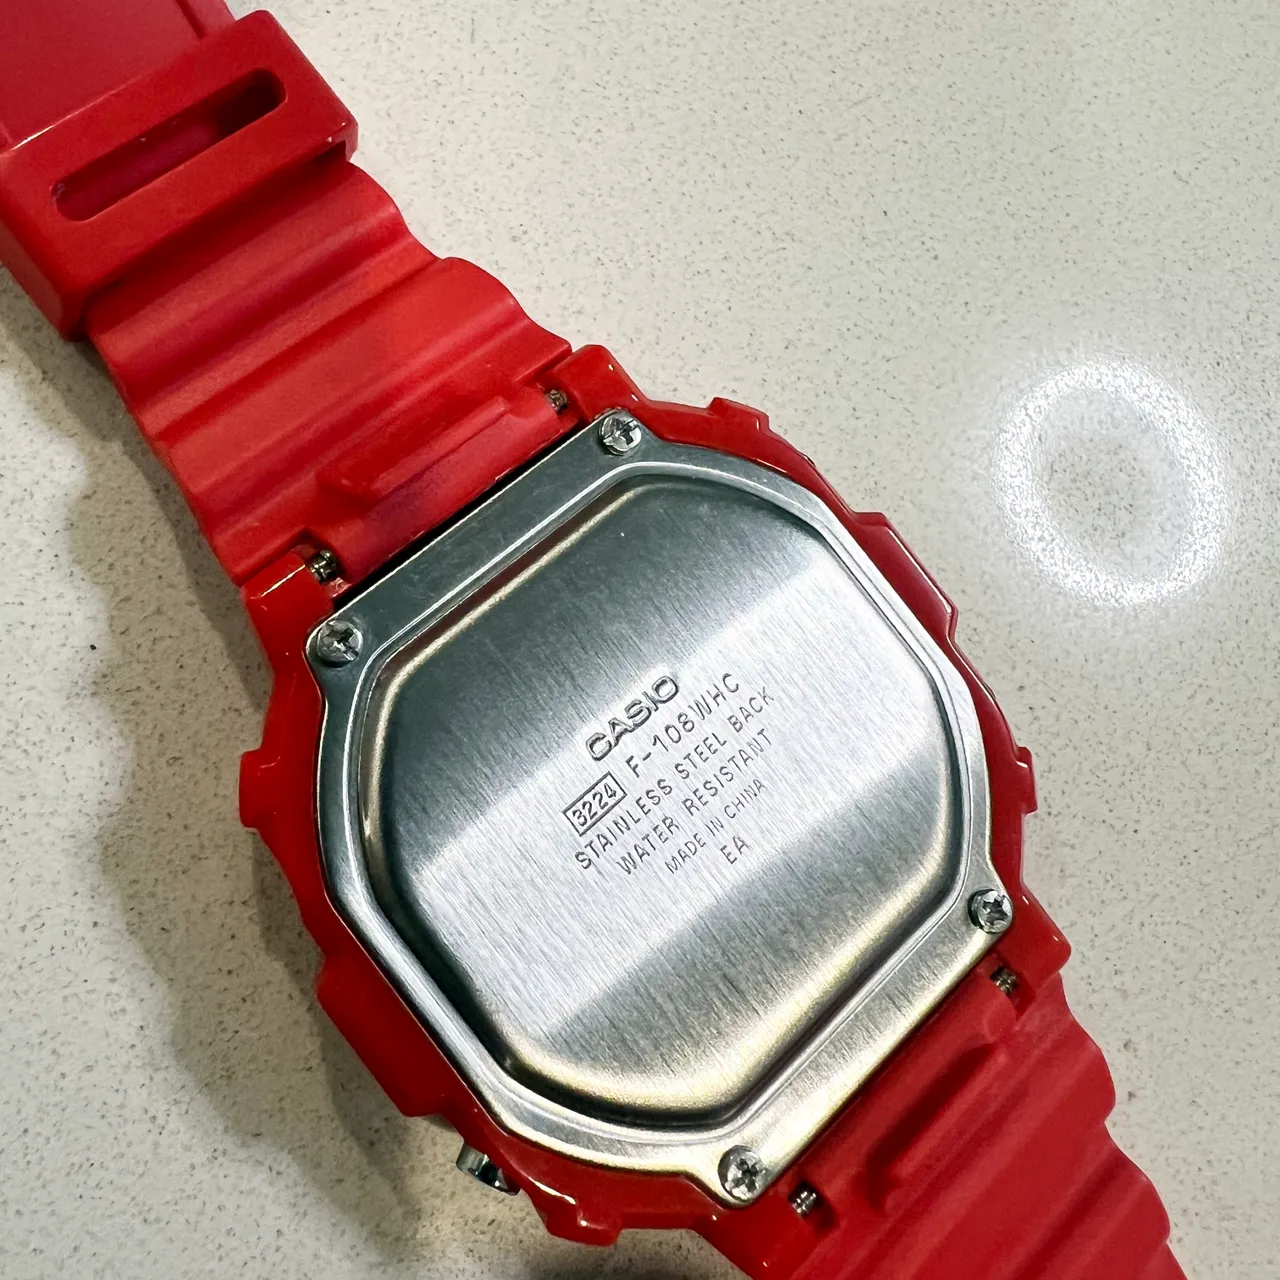 Red Casio Watch photo 4